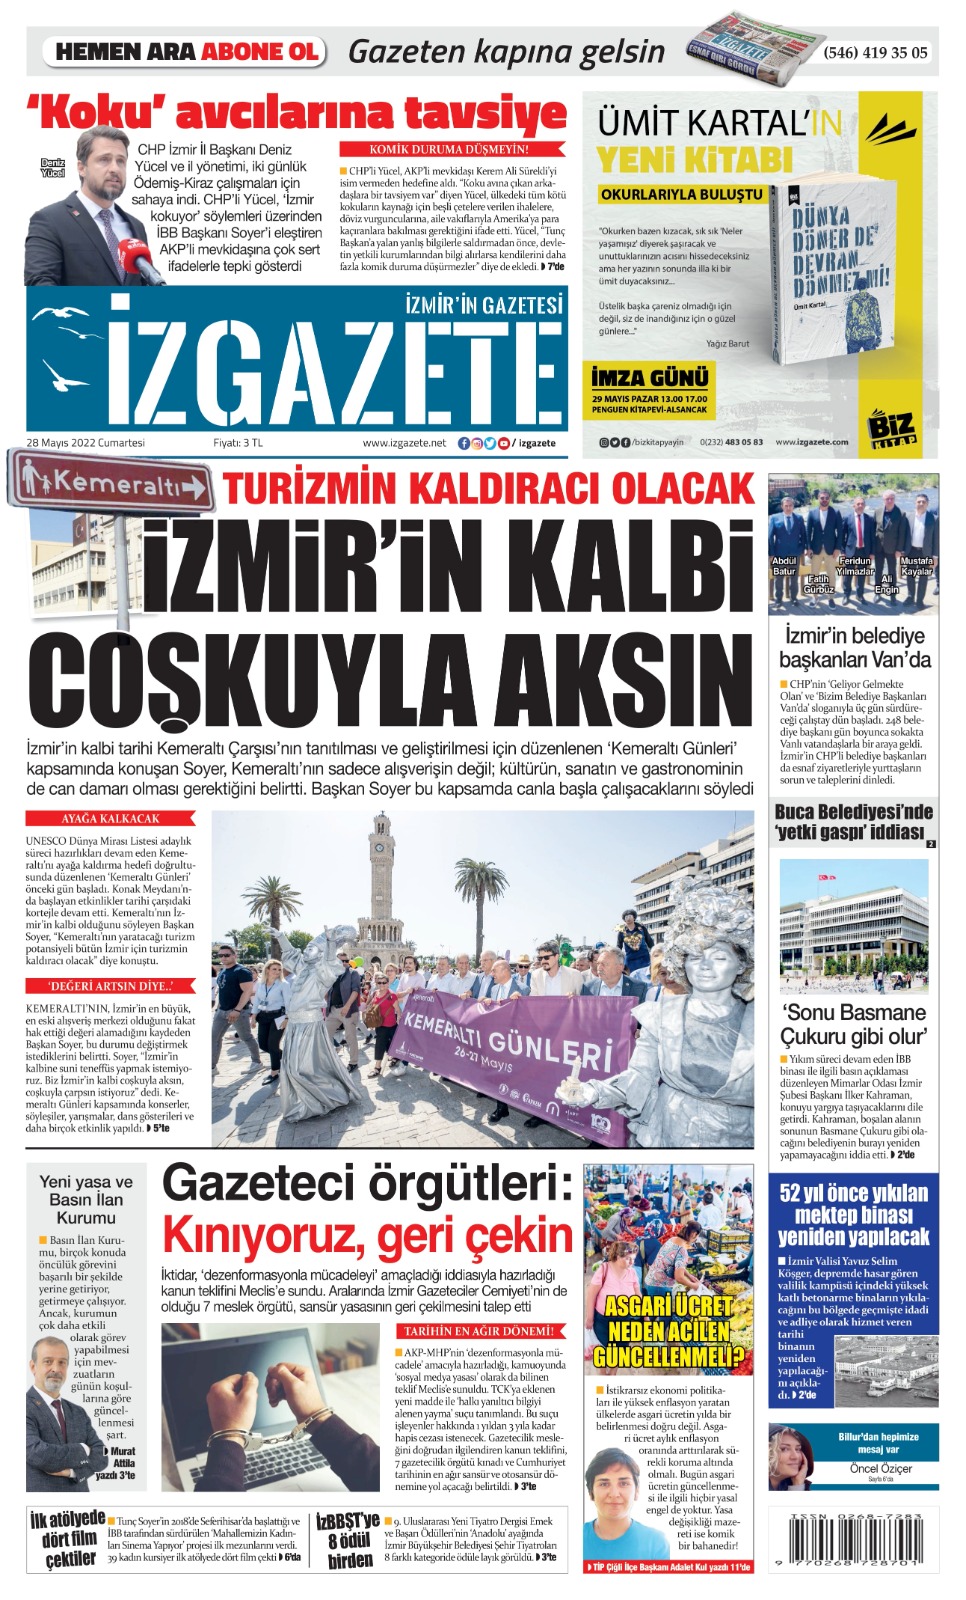 İz Gazete - İzmir'in Gazetesi - 28.05.2022 Manşeti